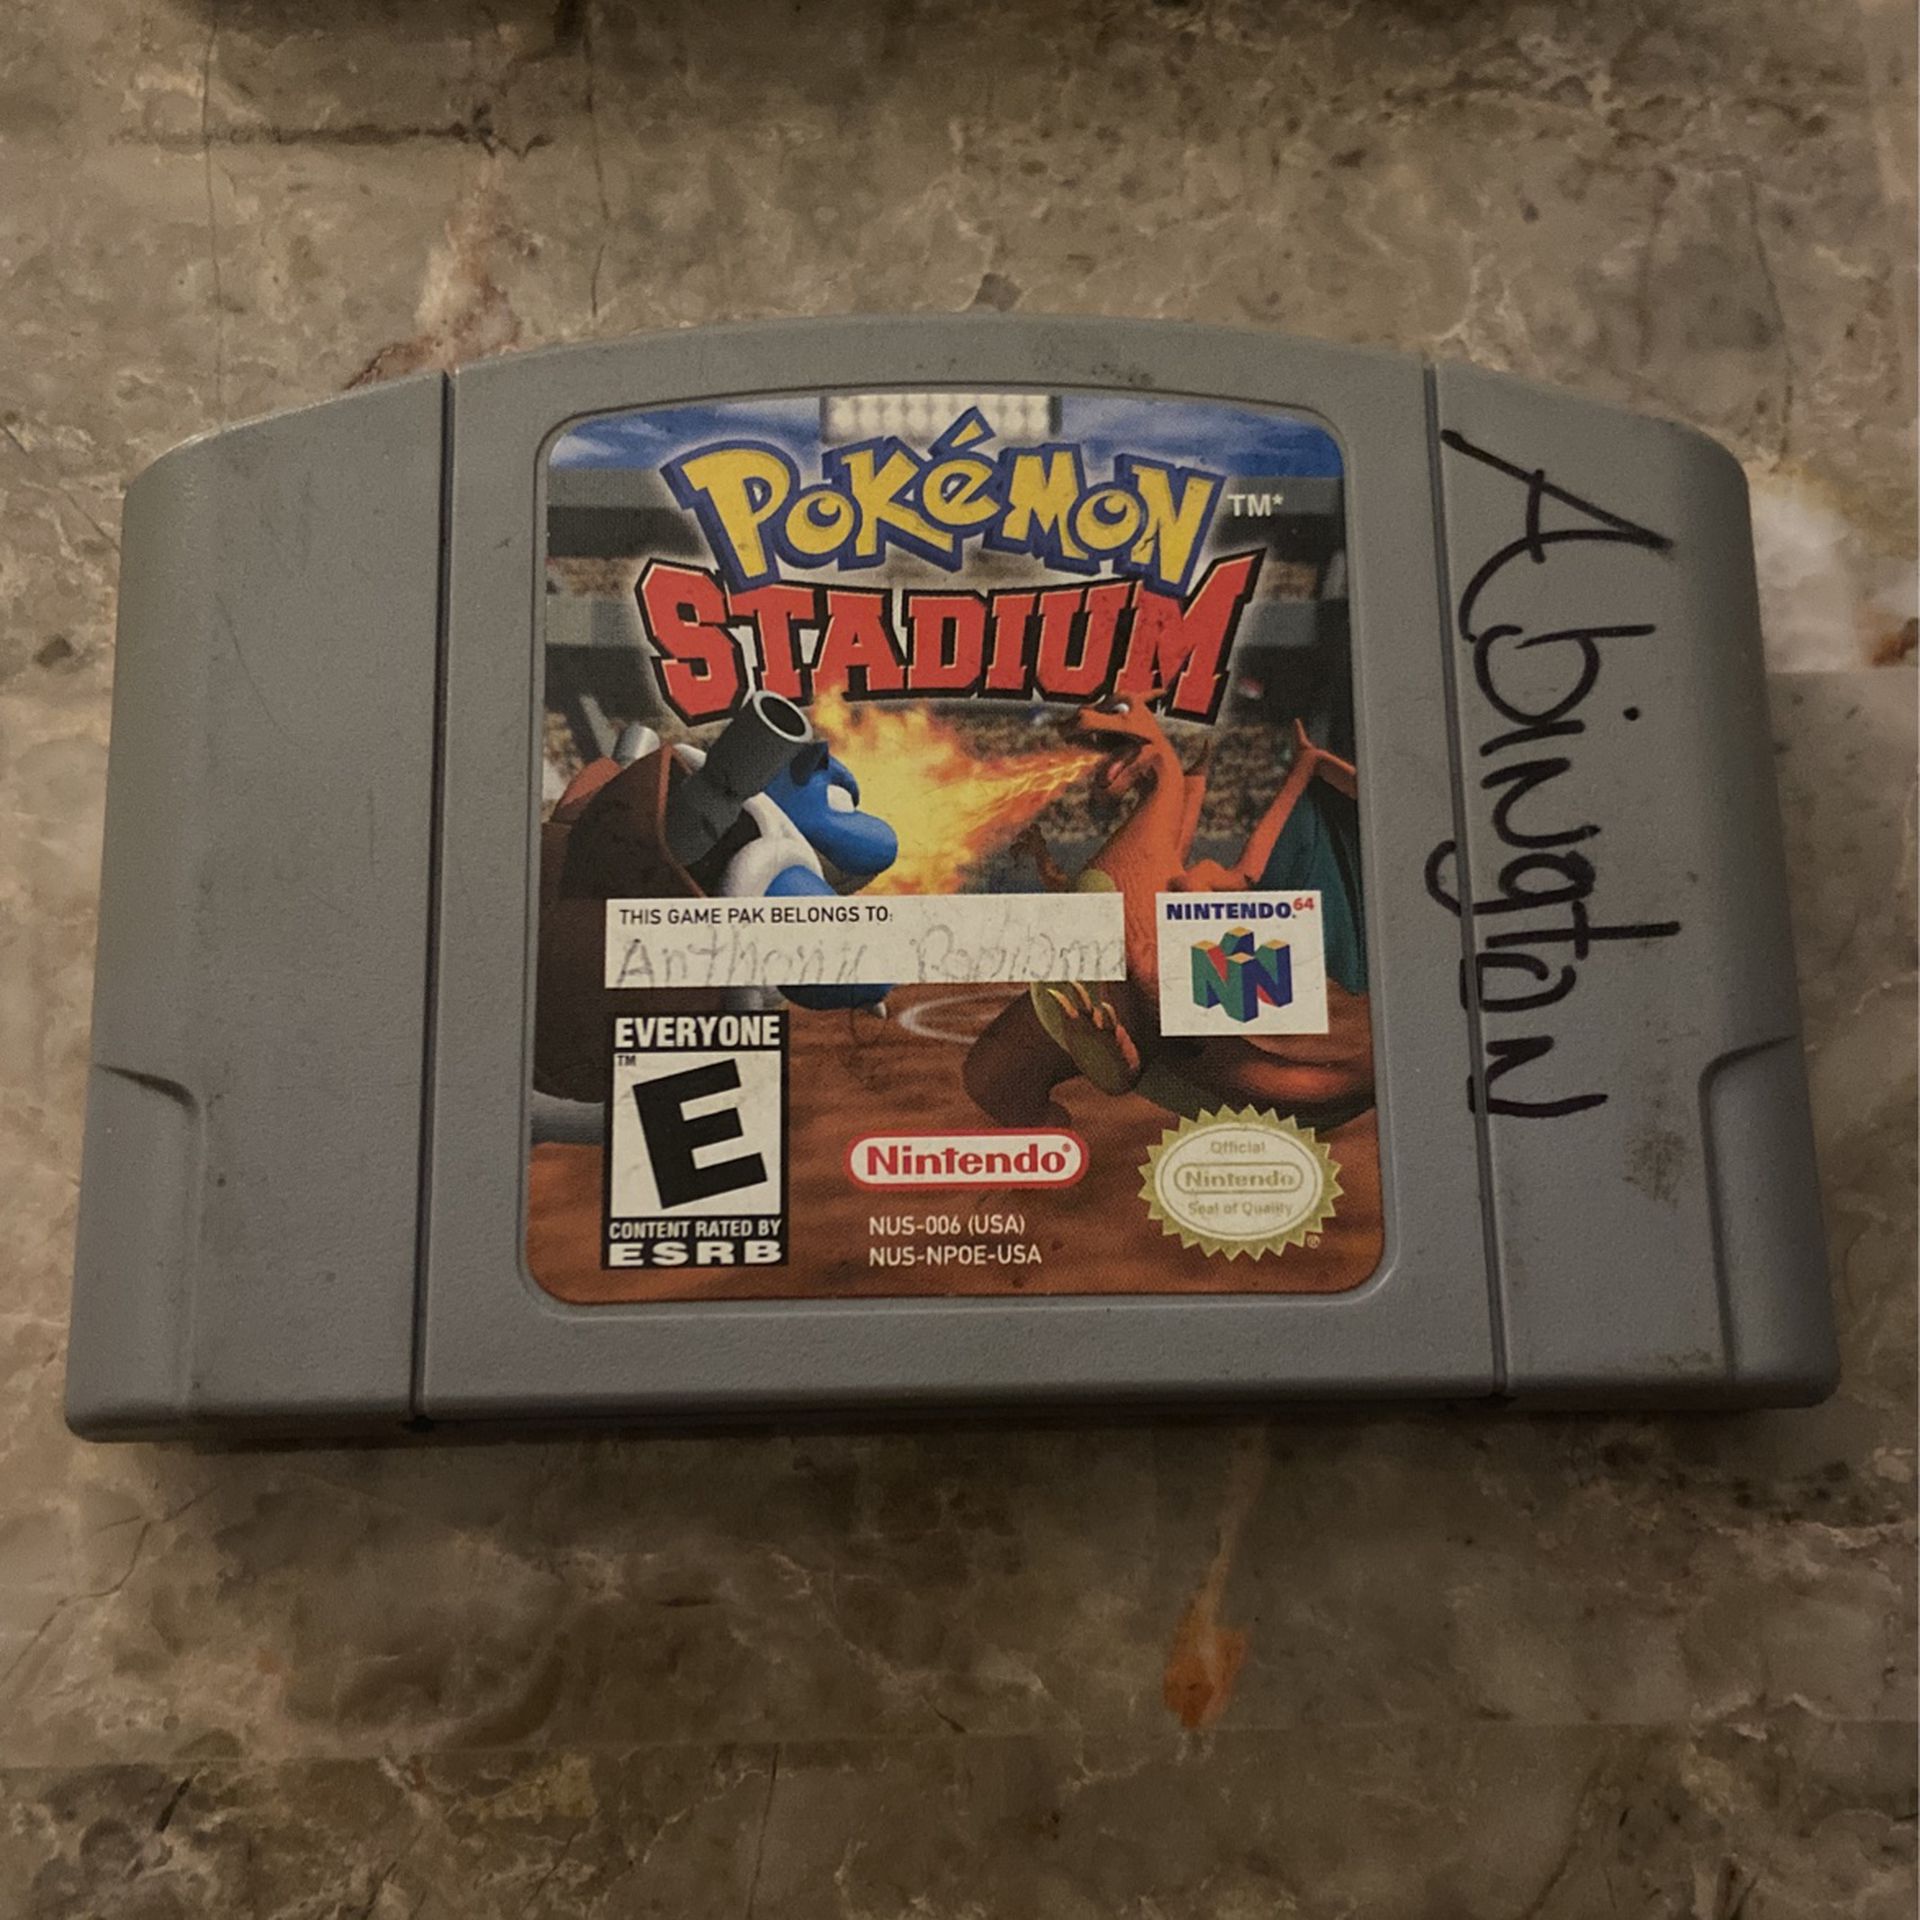 Nintendo 64 Pokémon Stadium Game Cartridge 